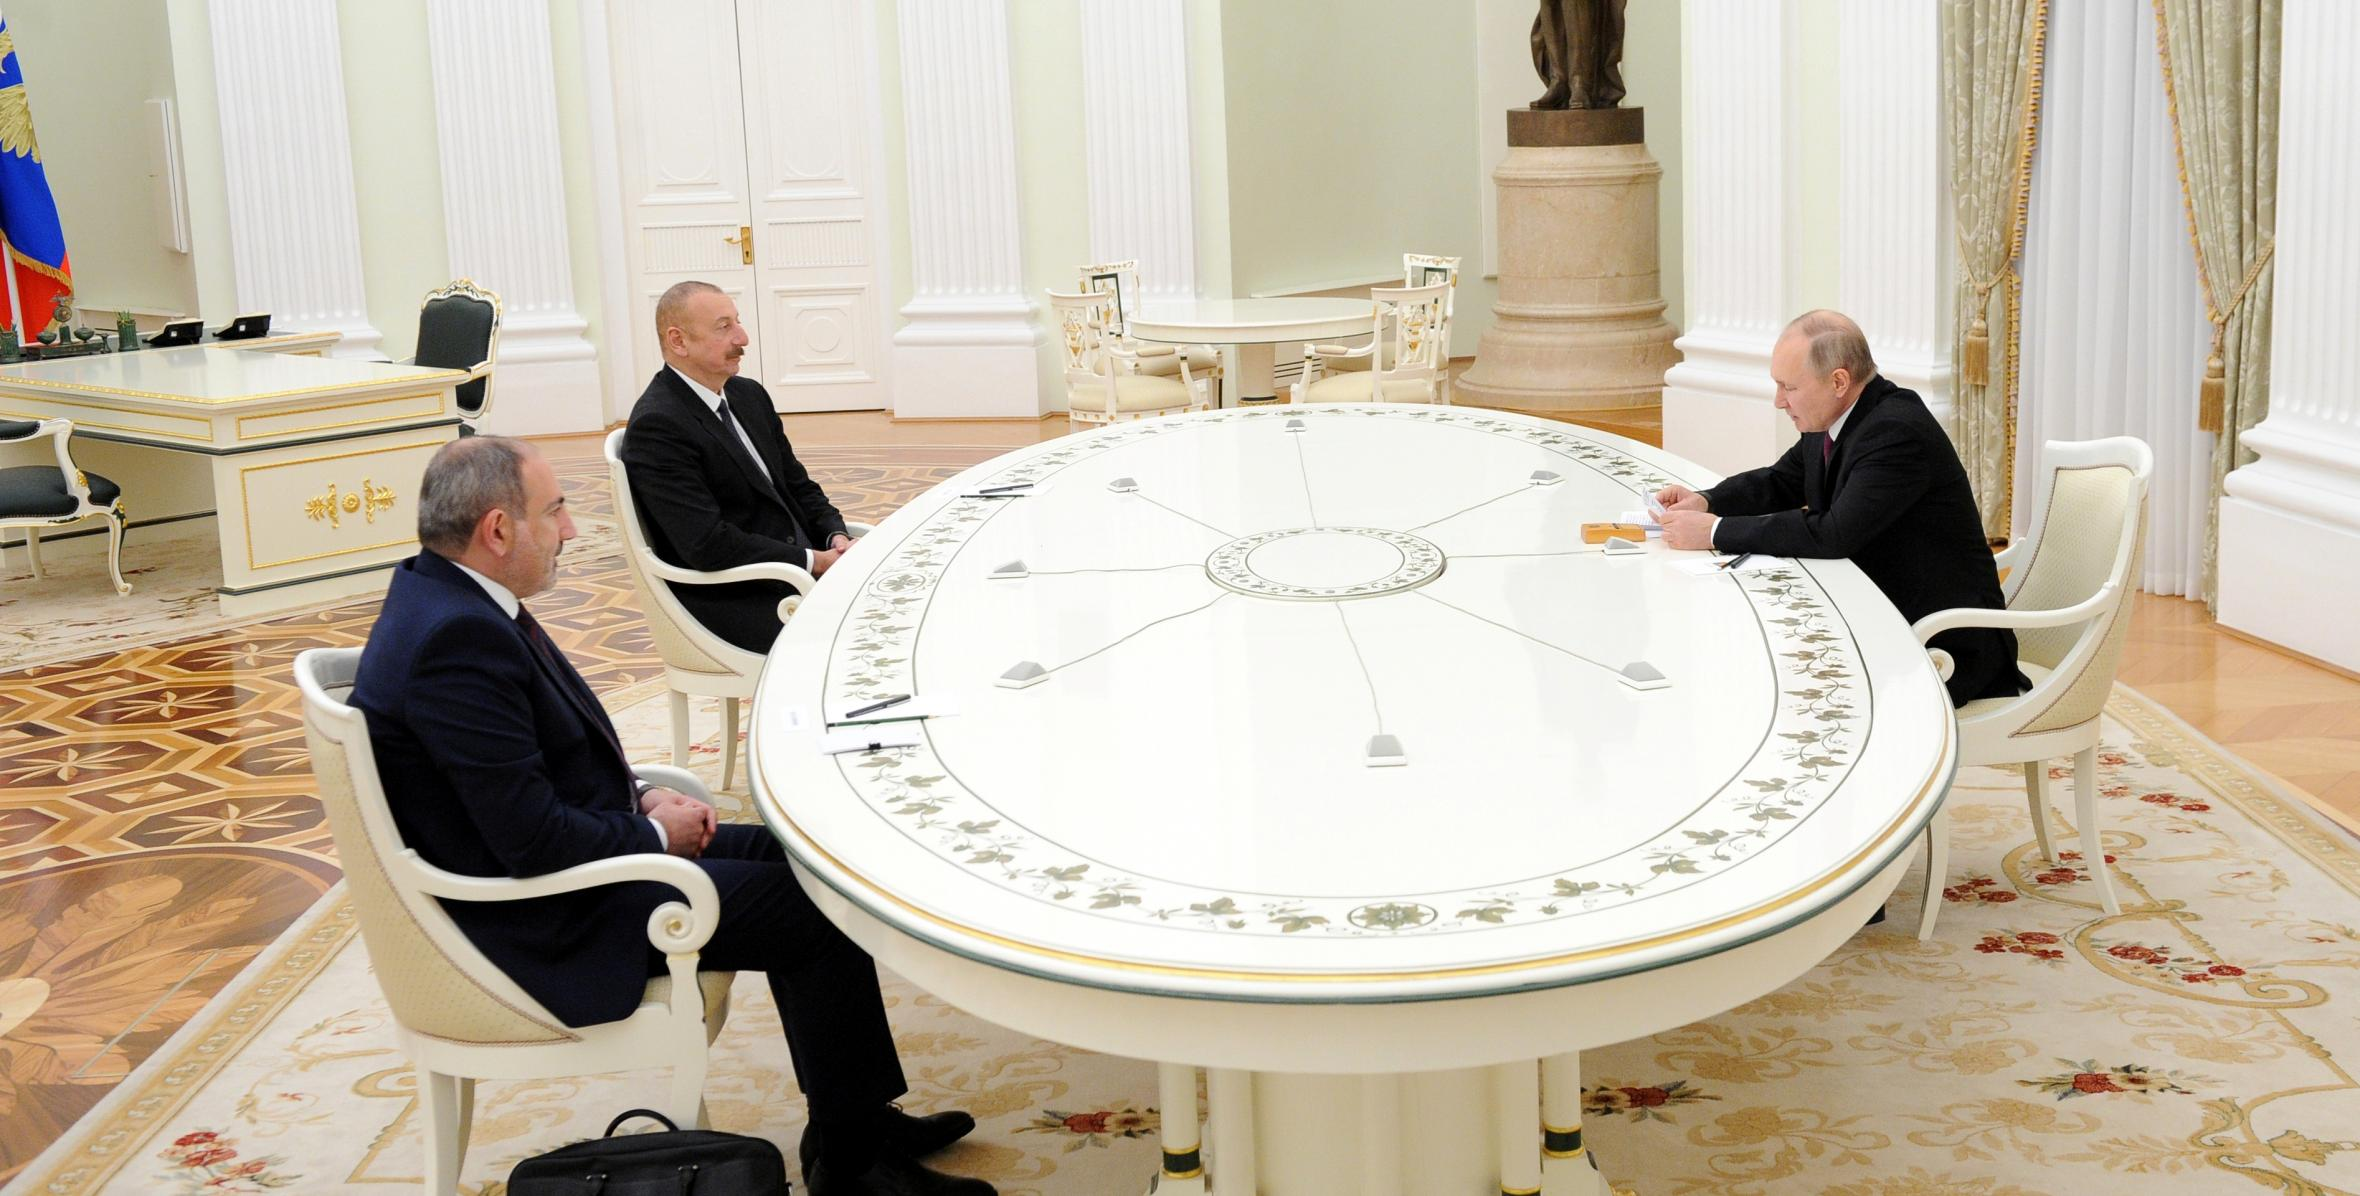 “İlham Əliyev, Vladimir Putin və Nikol Paşinyan arasında üçtərəfli görüş keçiriləcək”